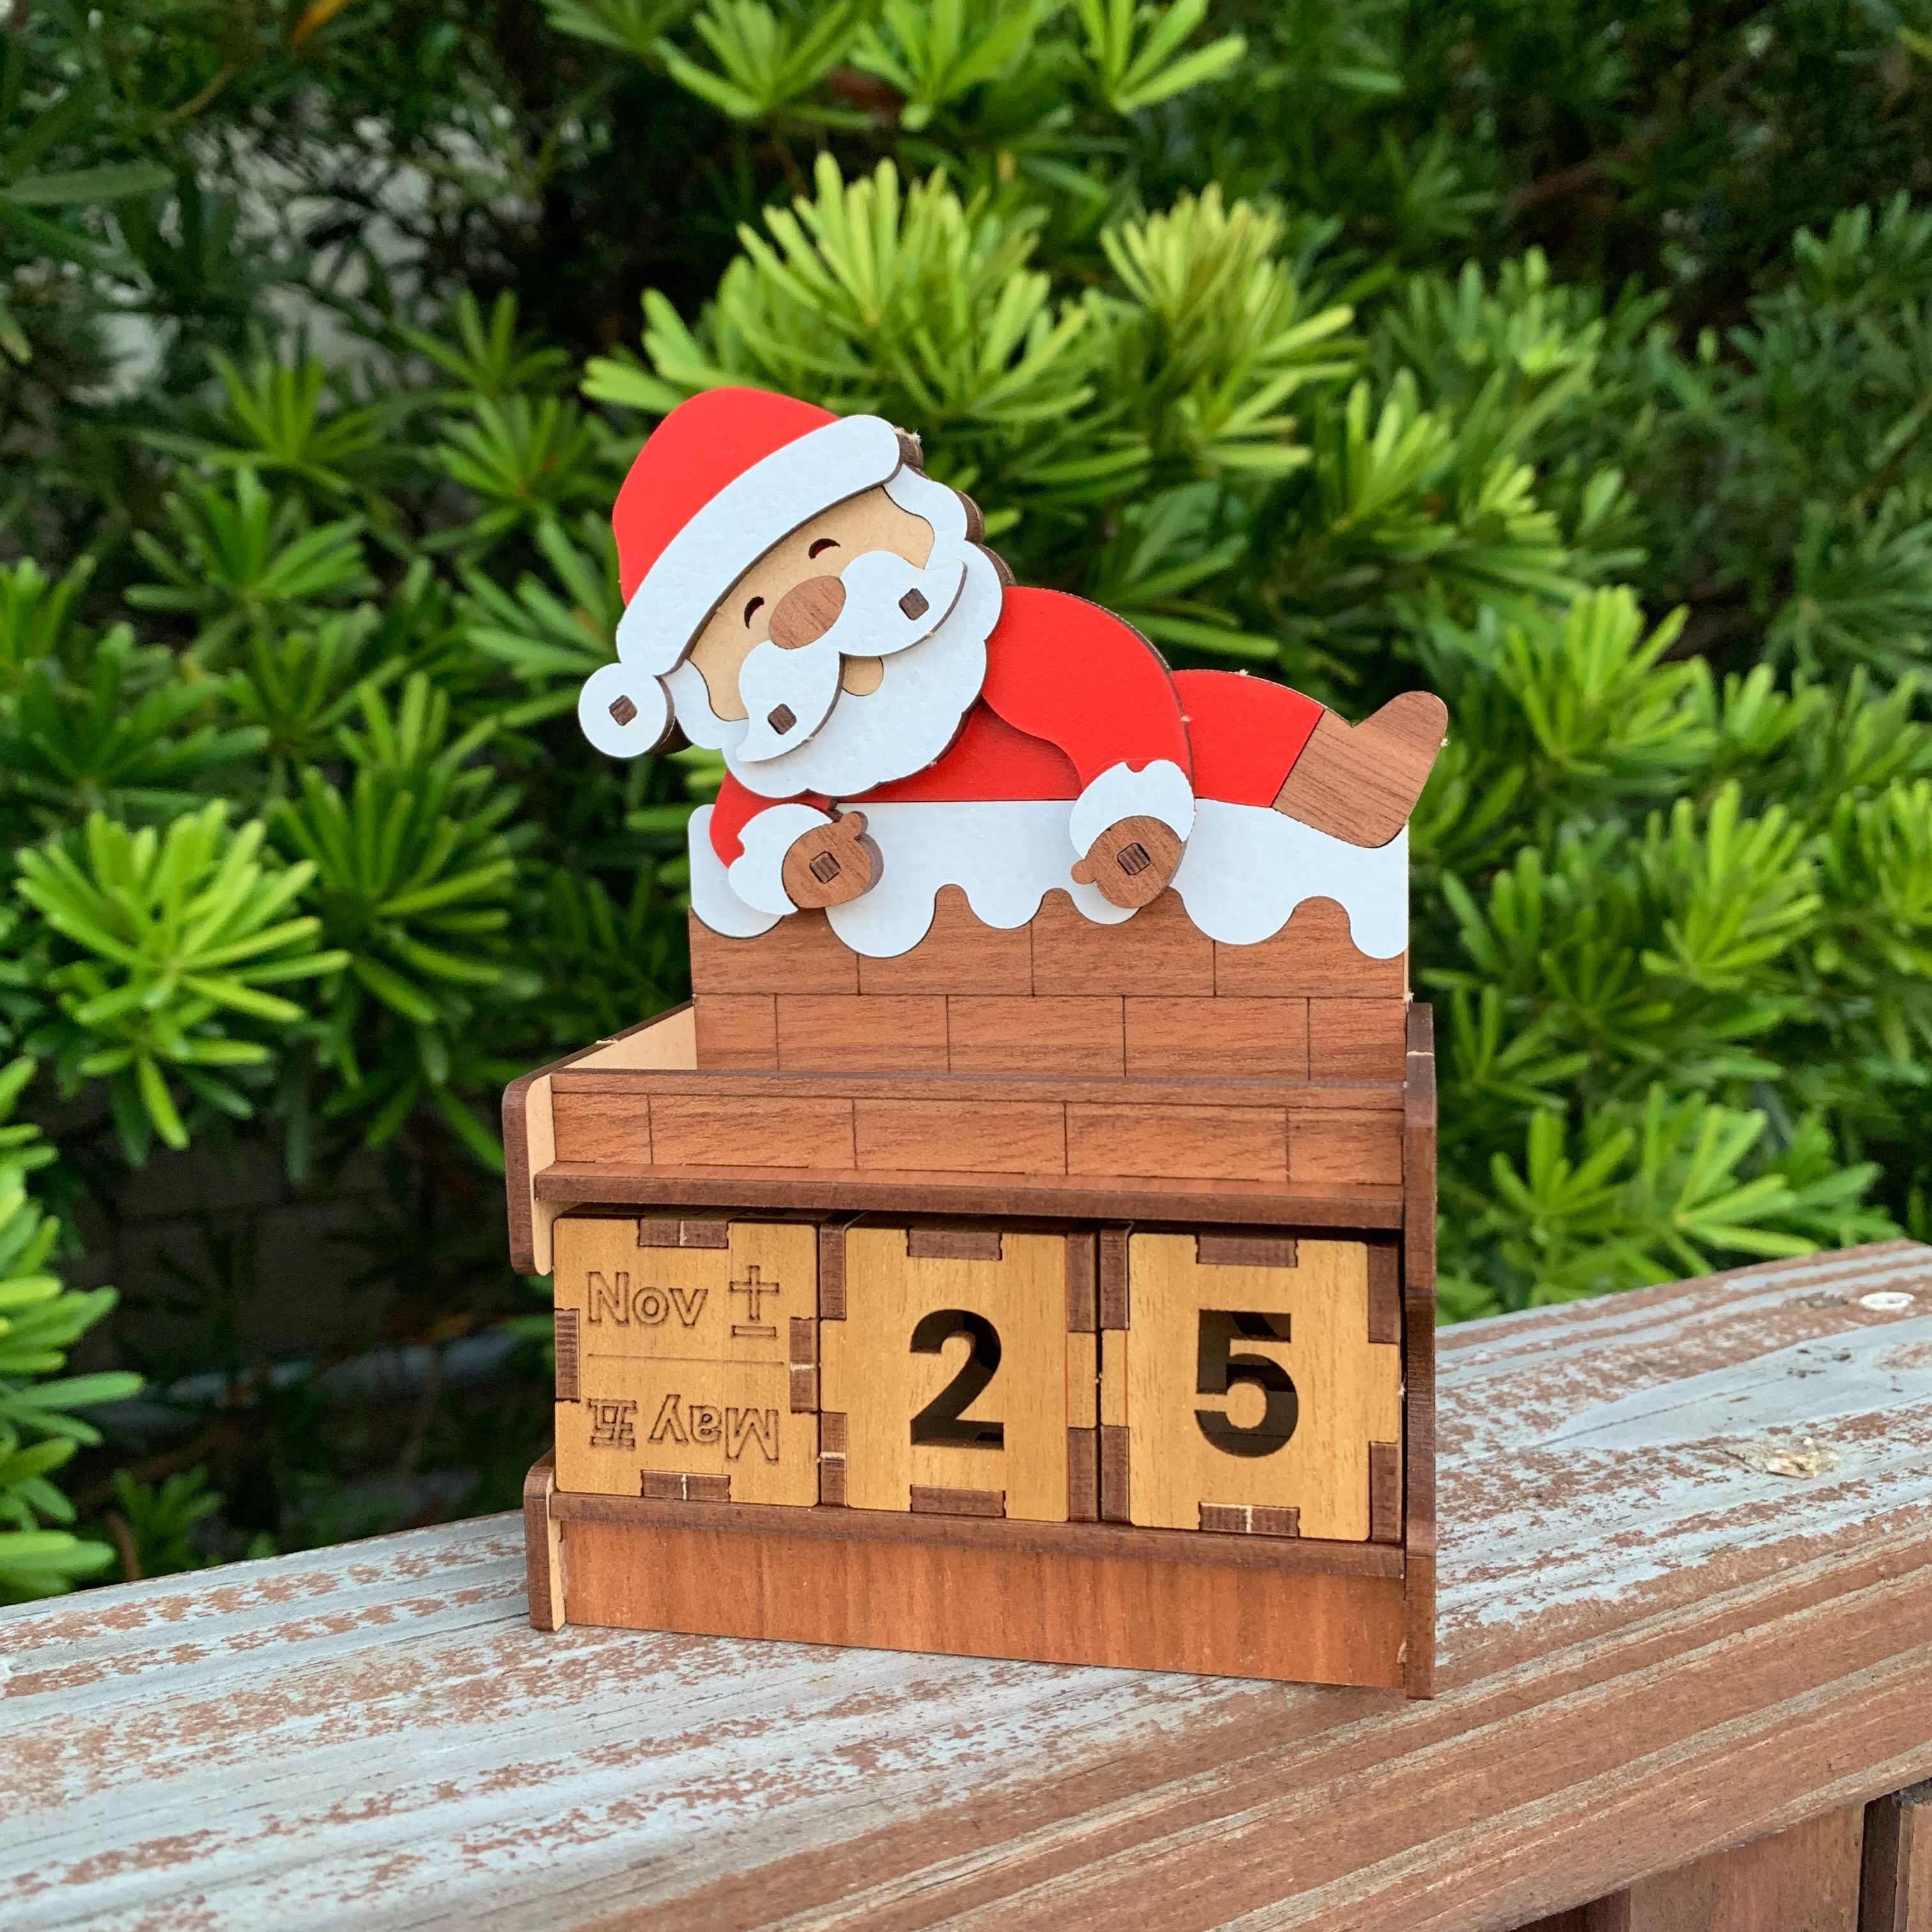 【聖誕禮物】聖誕老人 爬煙囪 造型 萬年曆 禮盒 DIY 手做 材料包